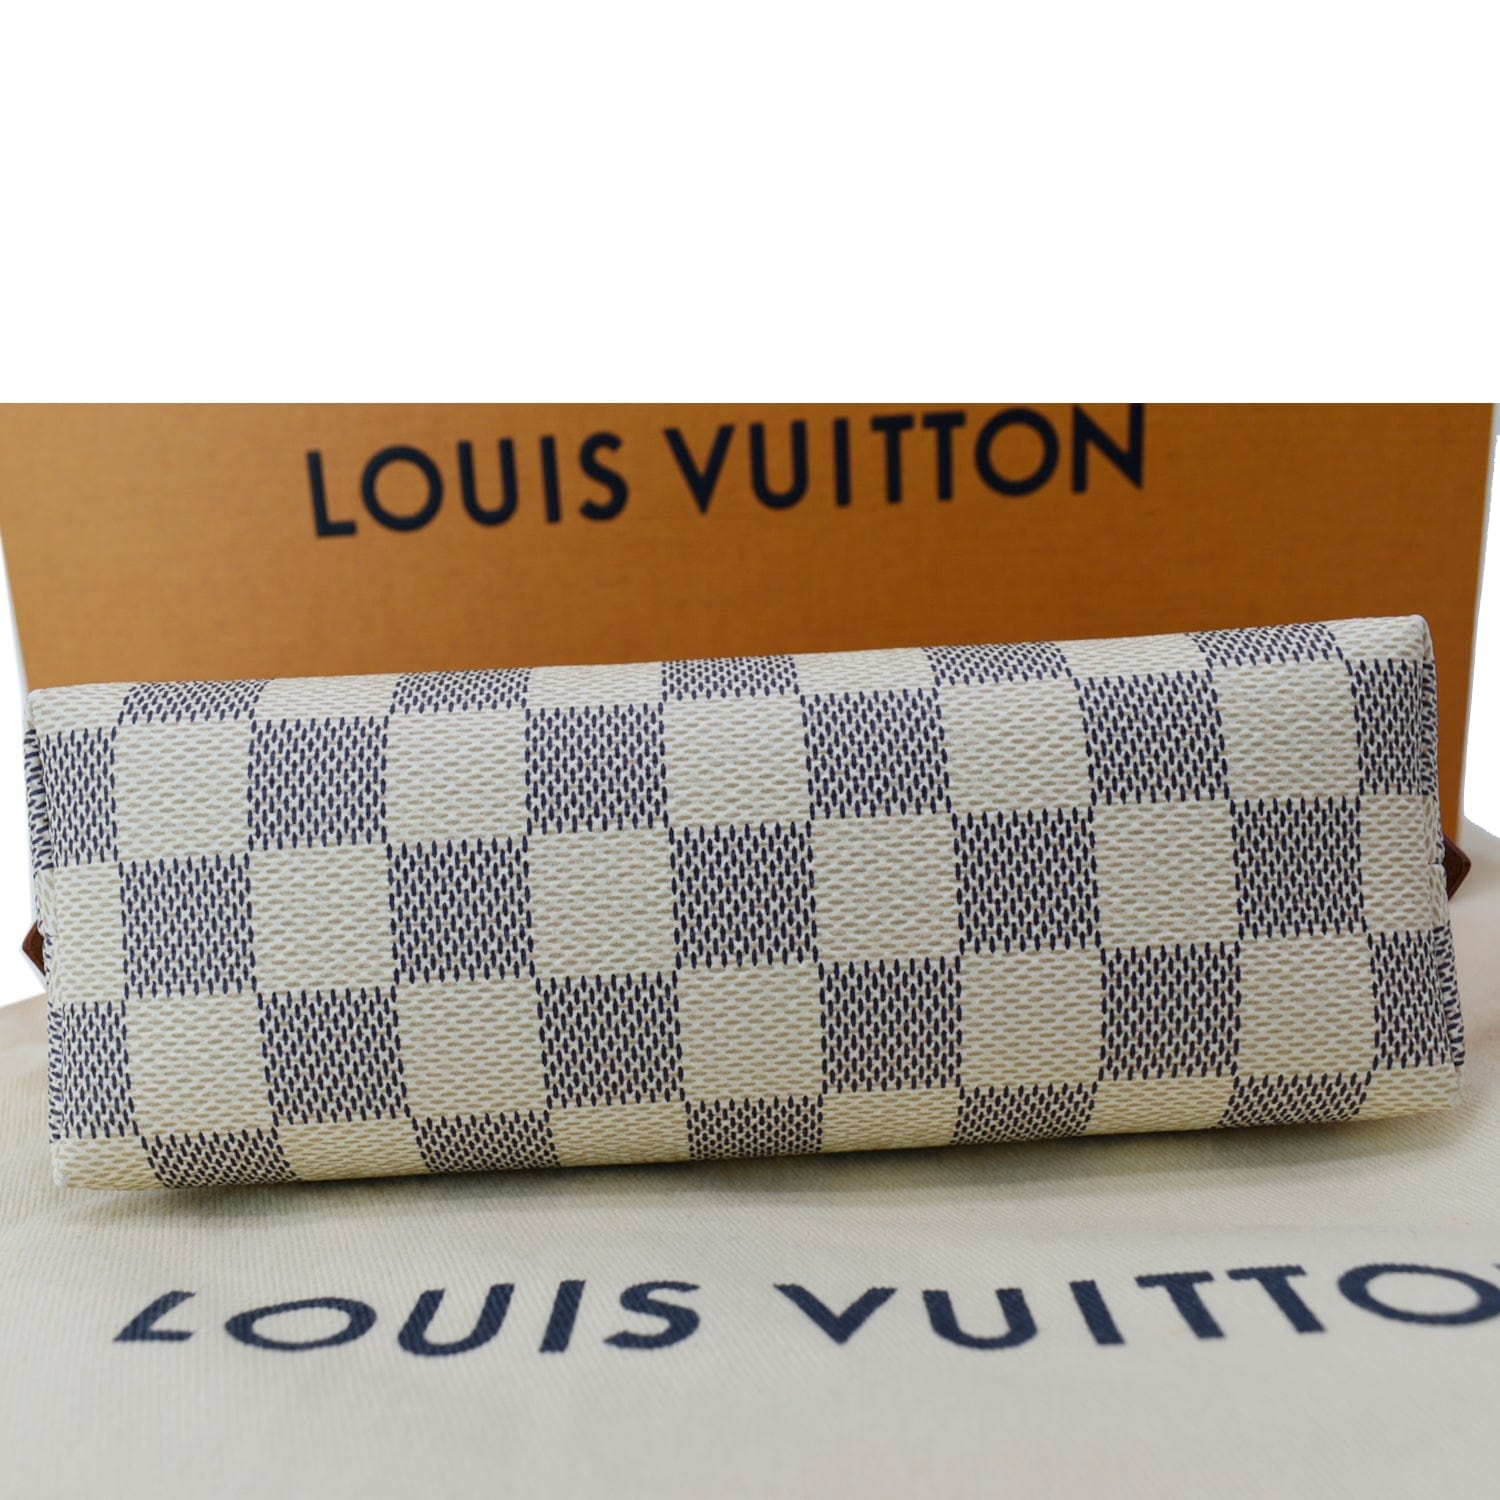 Louis Vuitton – Louis Vuitton Cosmetic Pouch PM Damier Azur